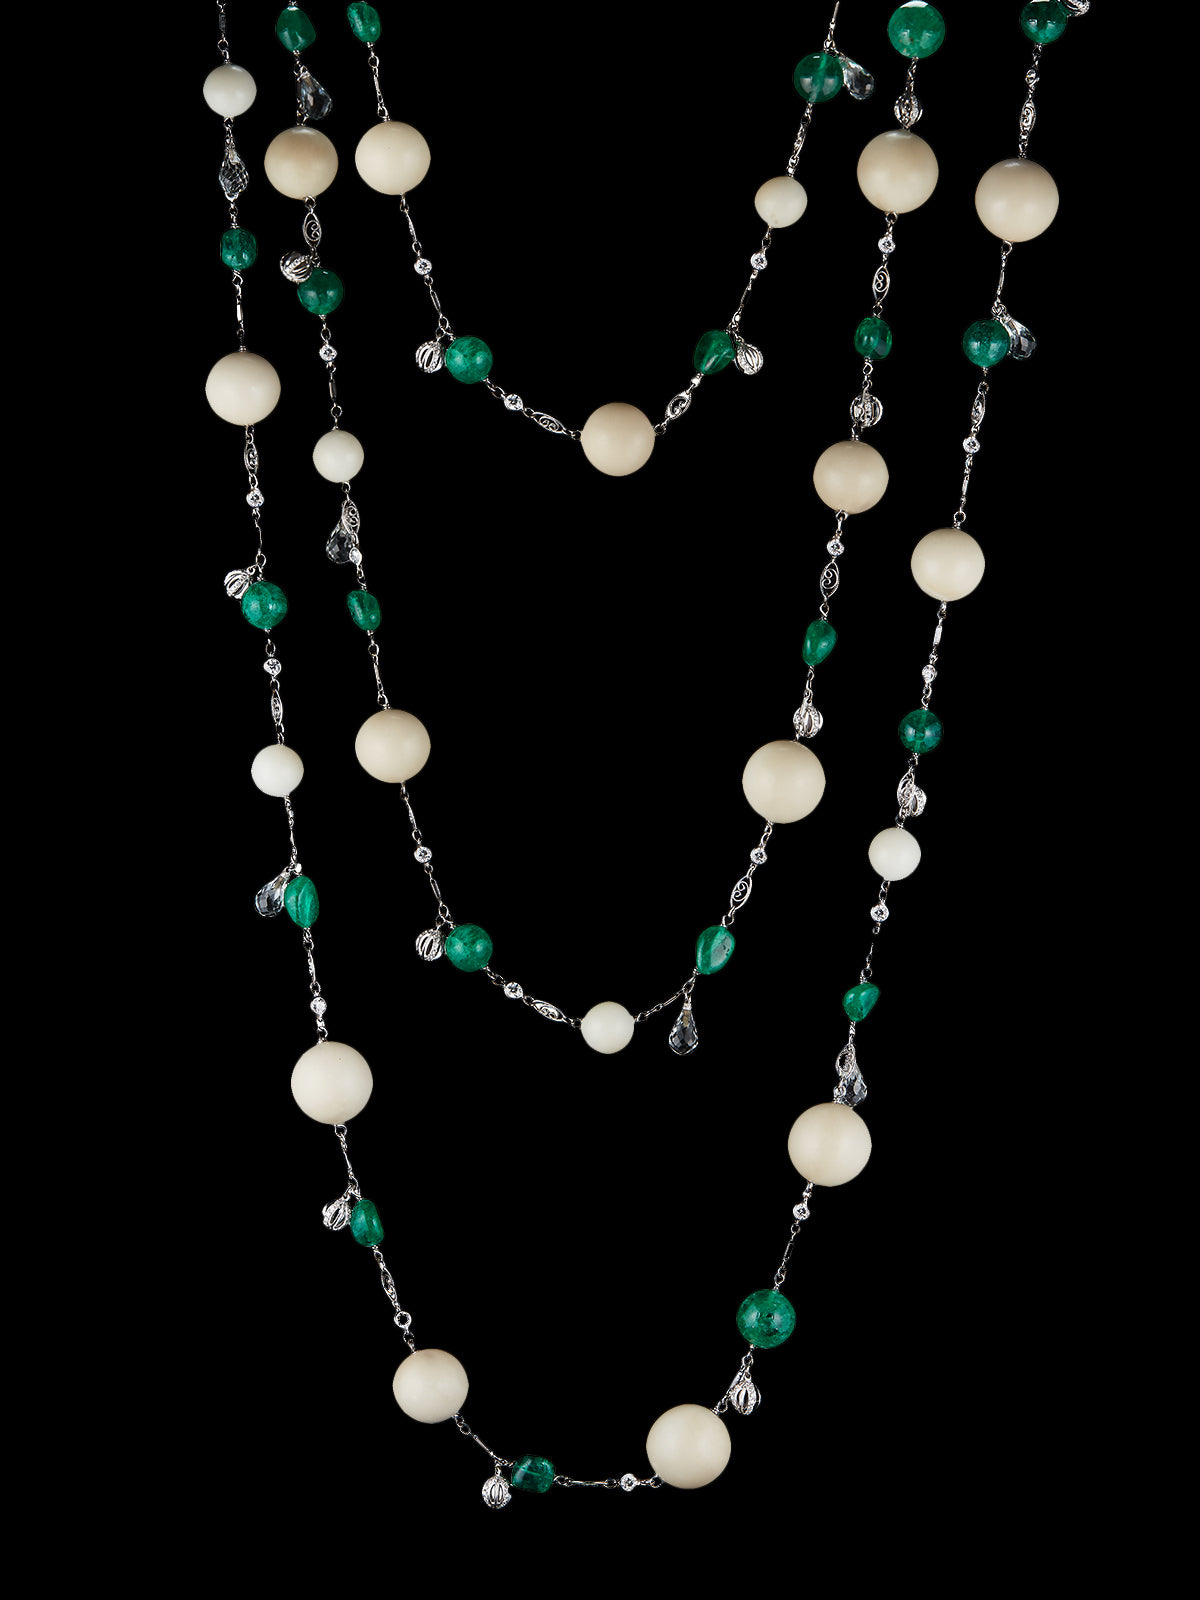 Tagua and Emerald Bead Sautoir Necklace Tagua and Emerald Bead Sautoir Necklace - Fashionkind